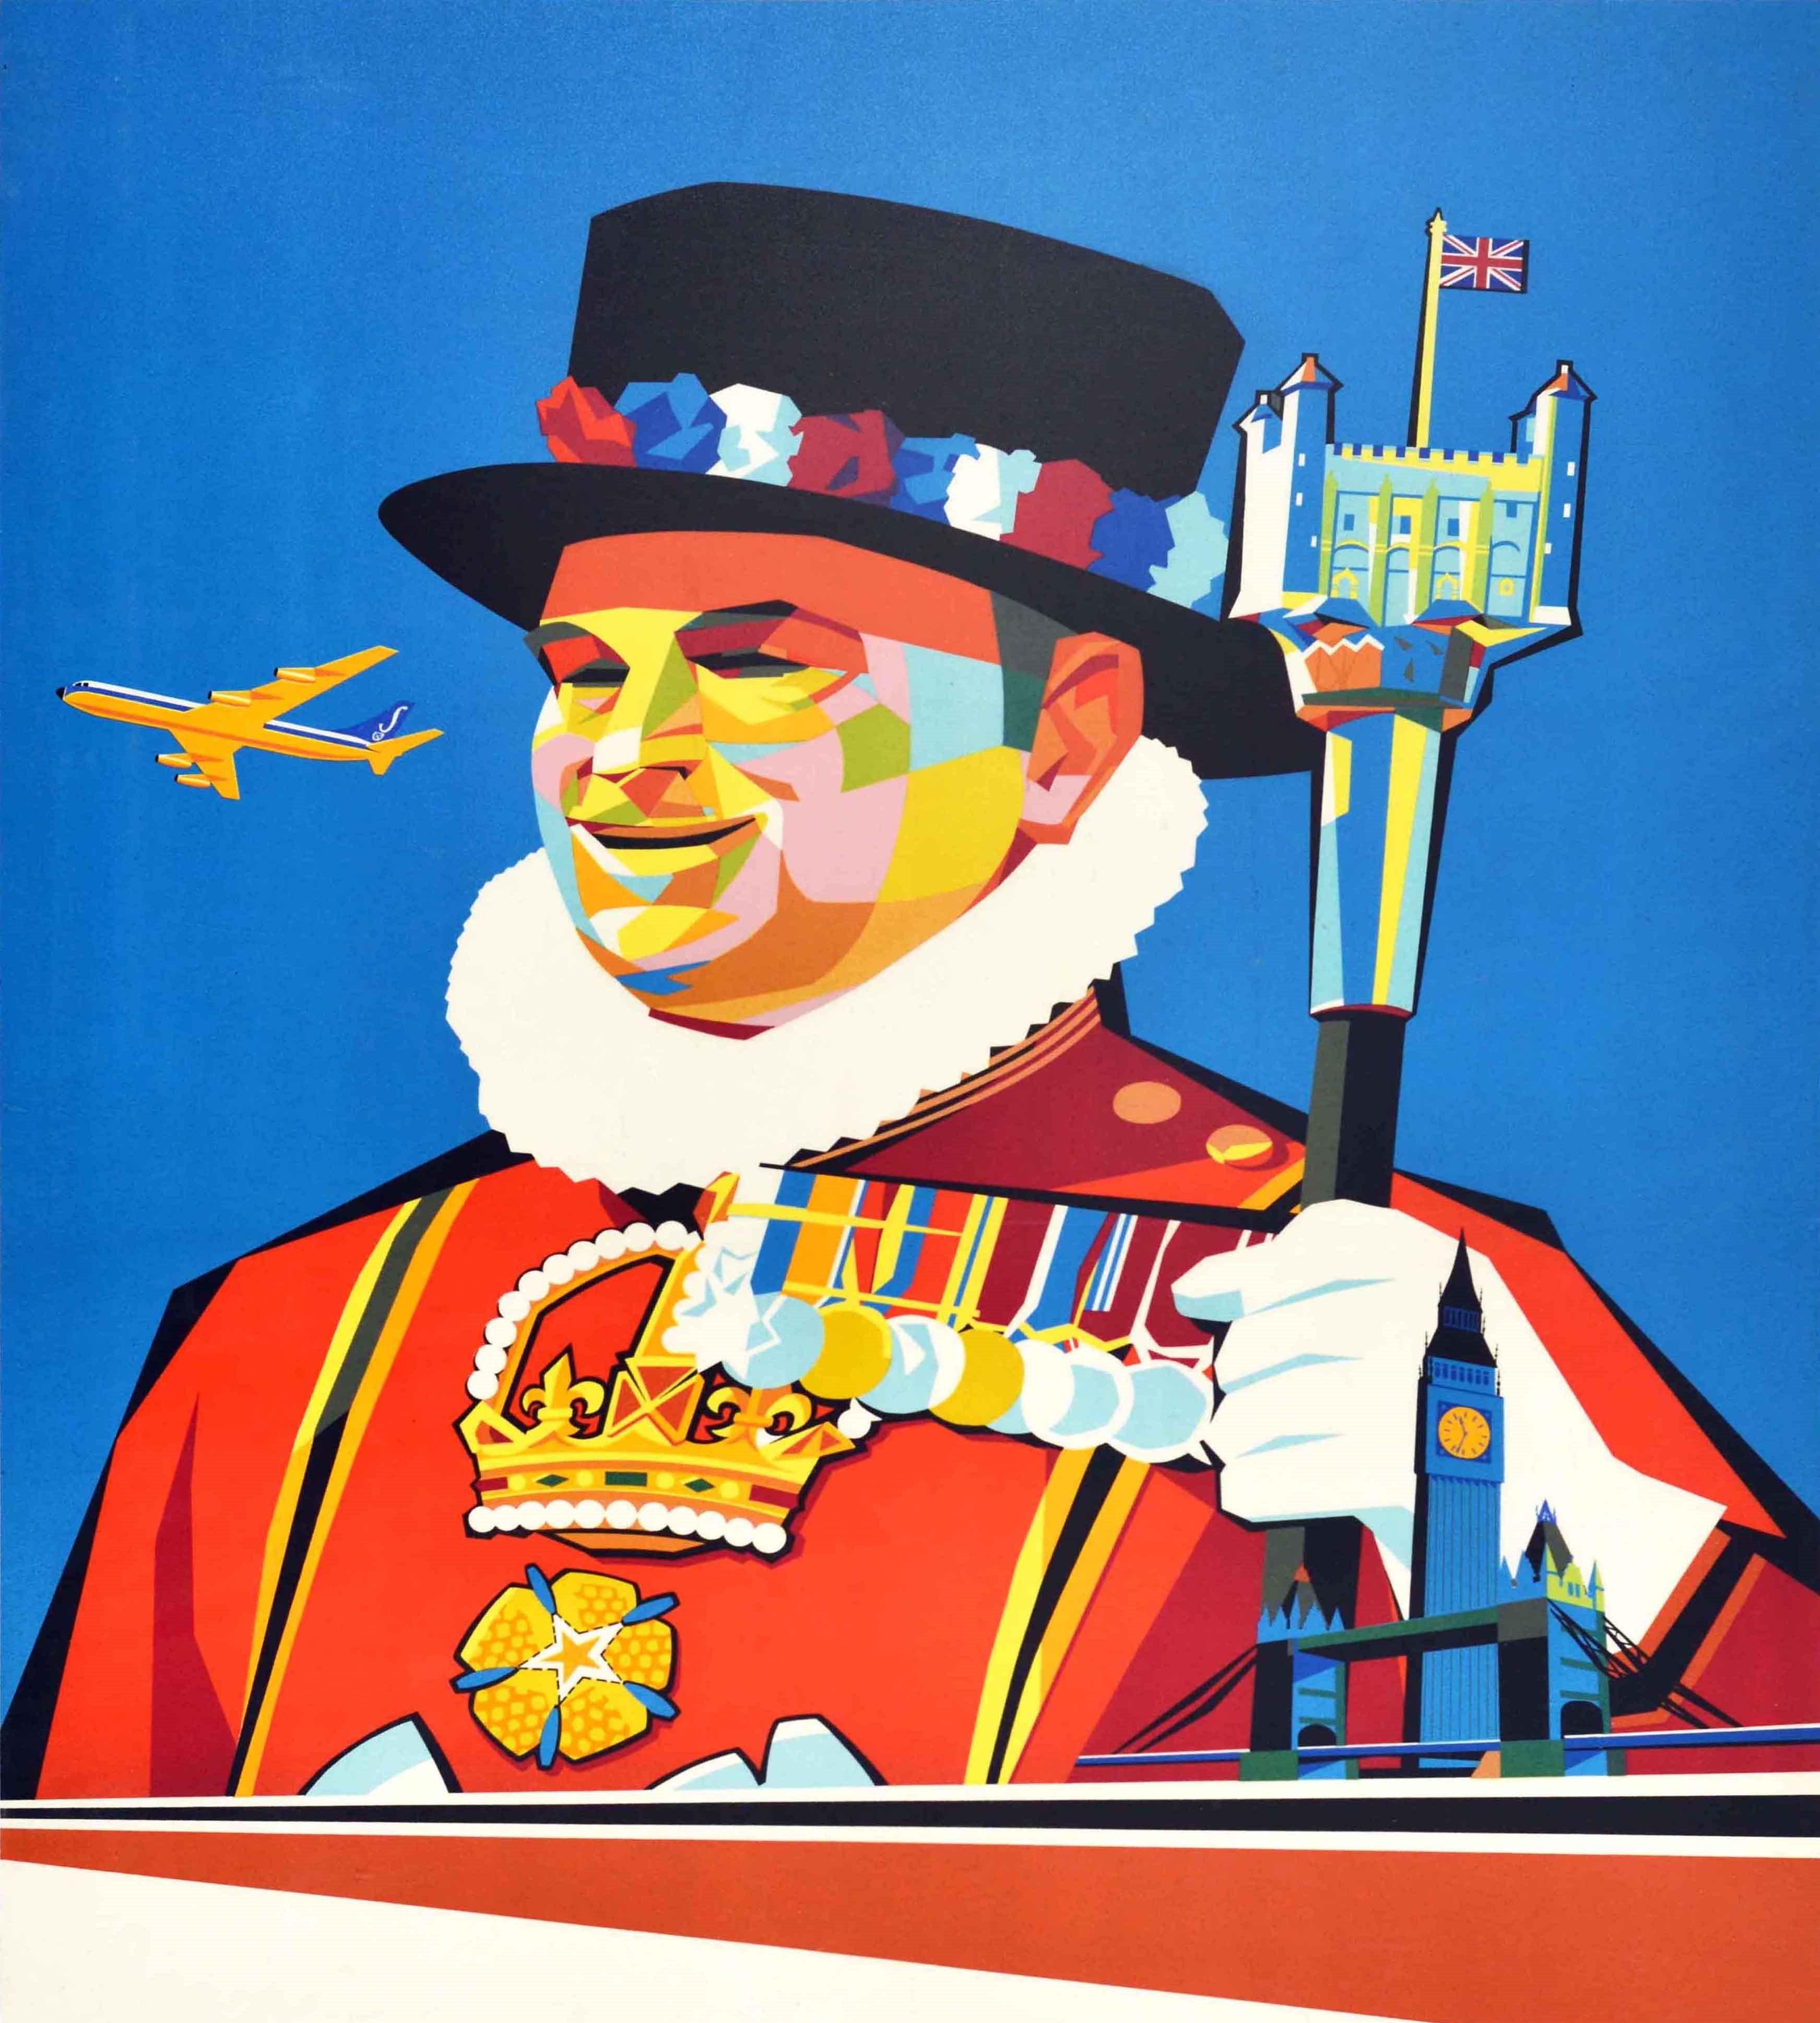 Original Vintage-Reise-Werbeplakat für London von Sabena Belgian Airlines mit einem fantastischen und farbenfrohen Design aus der Mitte des Jahrhunderts, das einen Beefeater / Yeoman Warder zeigt, der einen Stock hält, auf dem der Tower of London